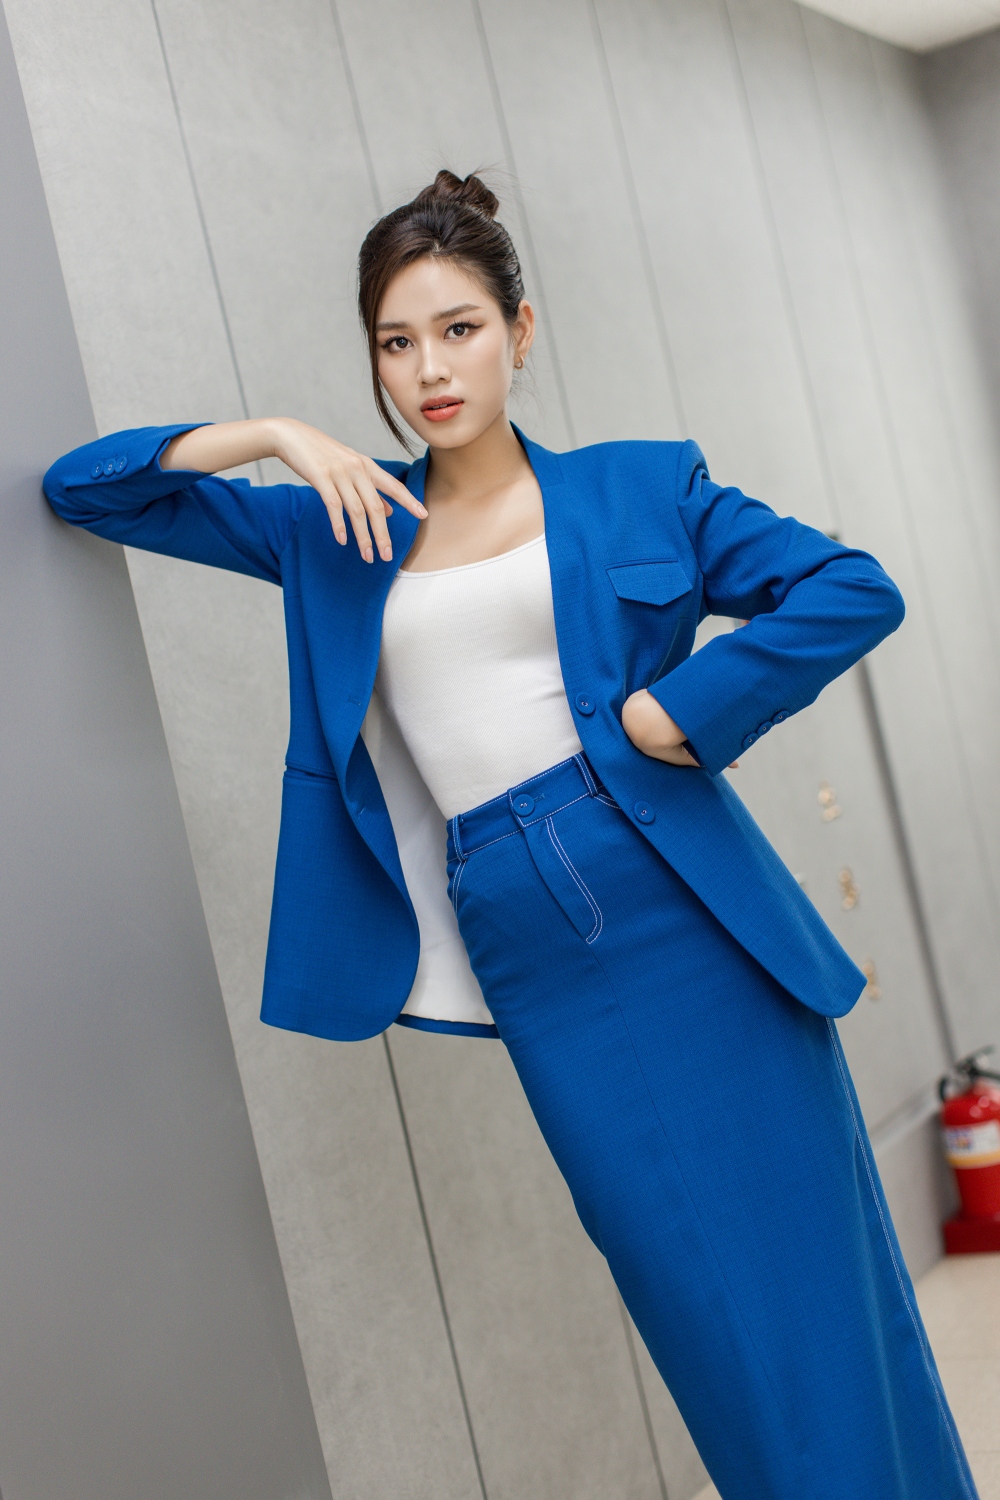 Hoa hậu Đỗ Hà xuống phố Hàn Quốc với phong cách doanh nhân - Ảnh 5.